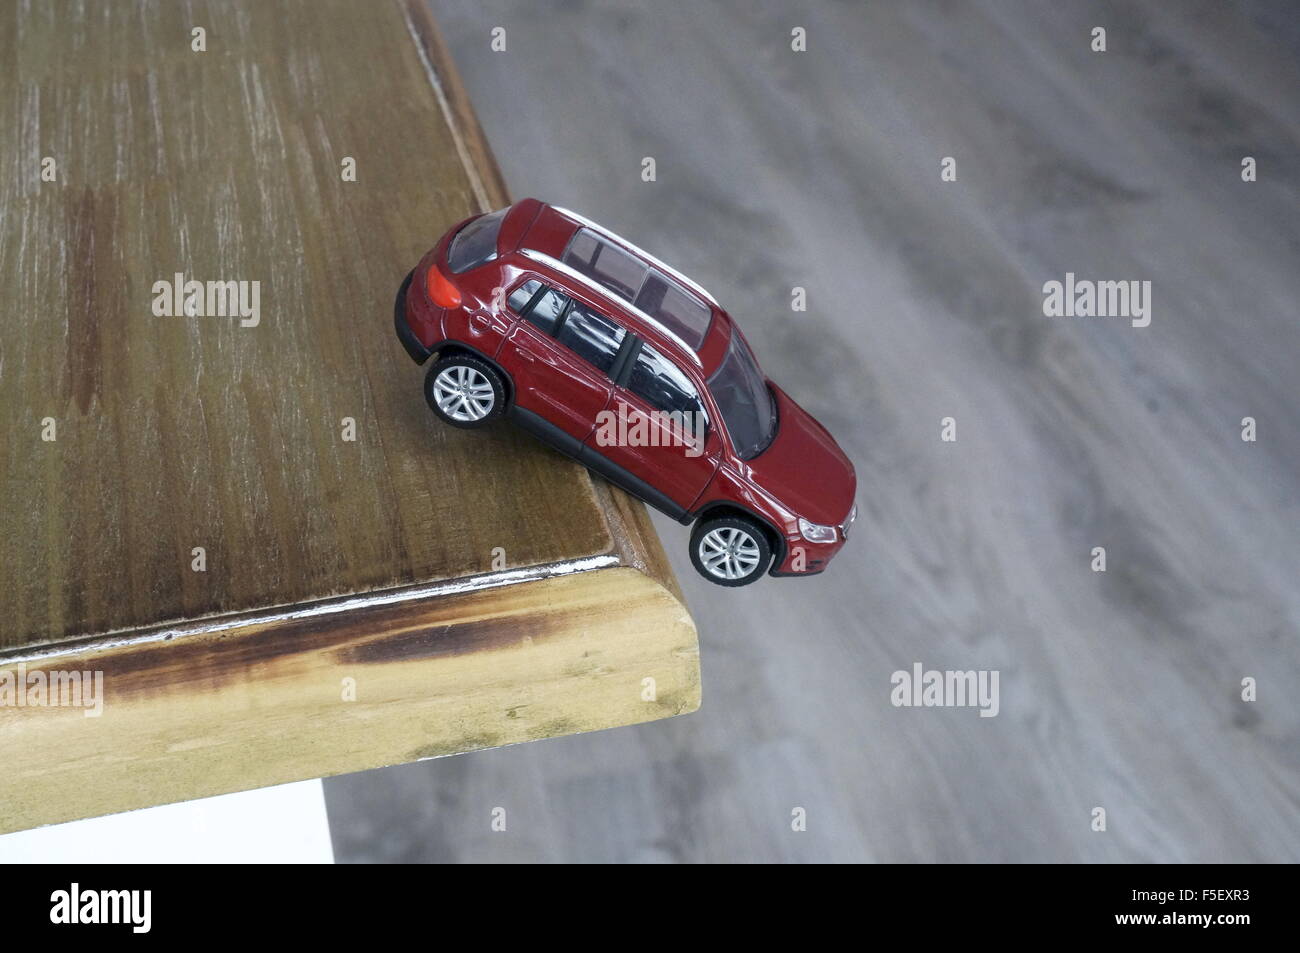 ILLUSTRATION - fällt ein Volkswagen-Auto-Modell "VW Tiguan" von der Kante des Tisches. Das Foto wurde am 15. Oktober 2015. Foto: S. Steinach - kein Draht-Dienst- Stockfoto